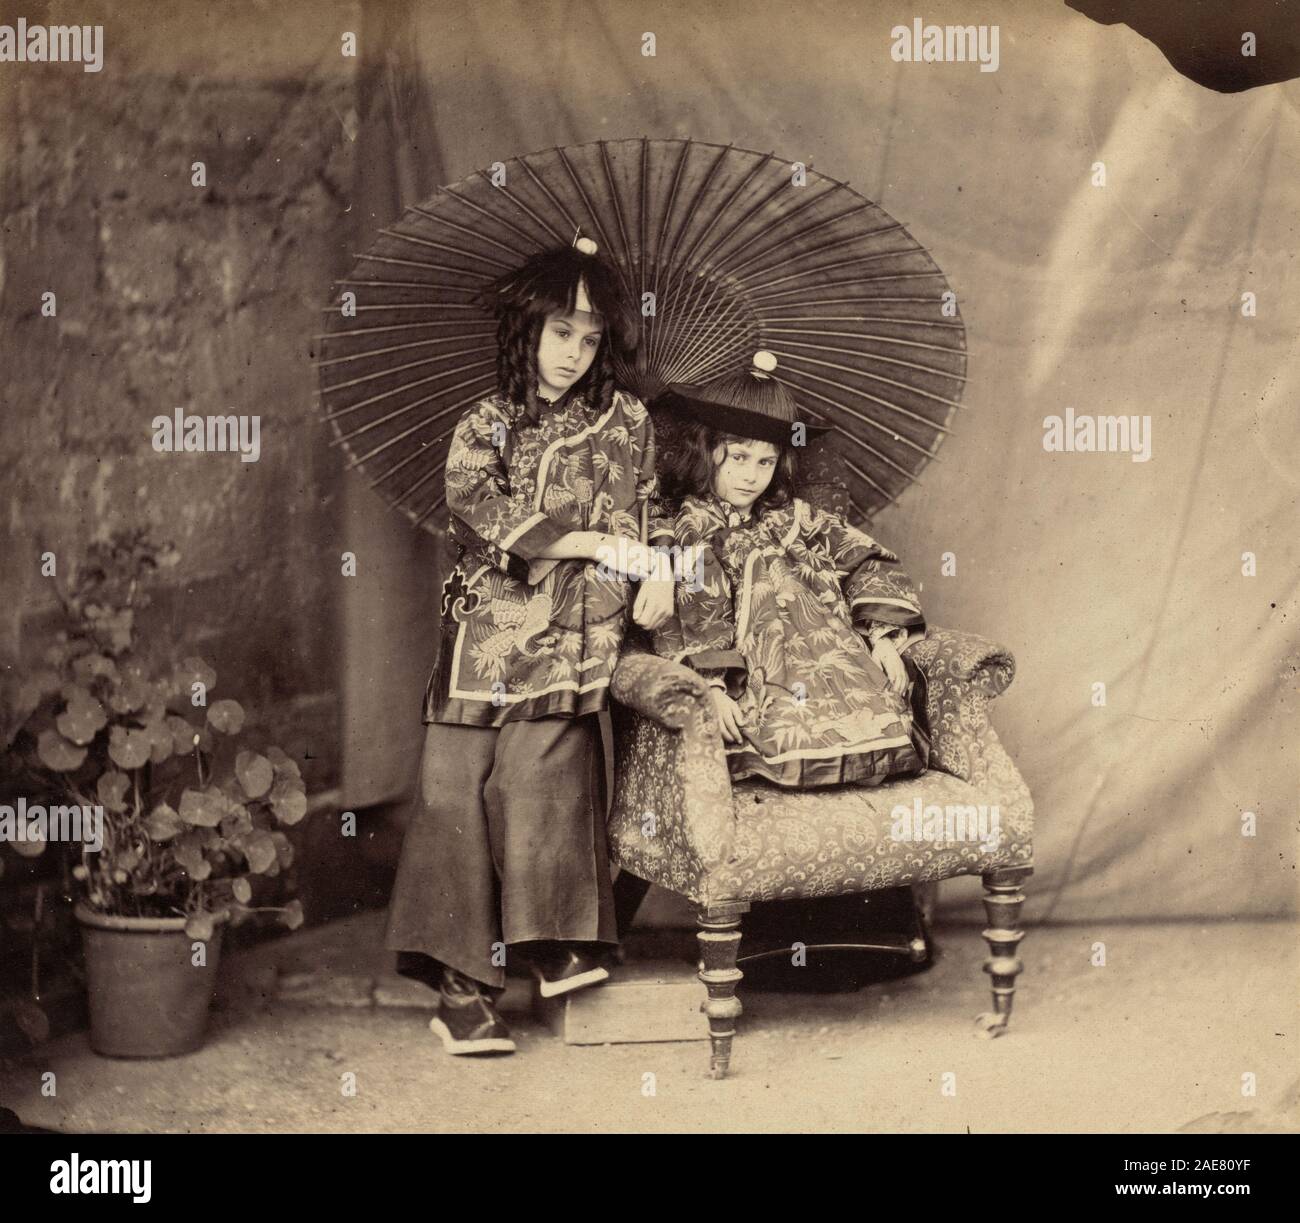 Lorina y Alice Liddell en chino vestido; 1860fecha Charles Lutwidge Dodgson (Lewis Carroll), Lorina y Alice Liddell en chino vestido, 1860 Foto de stock